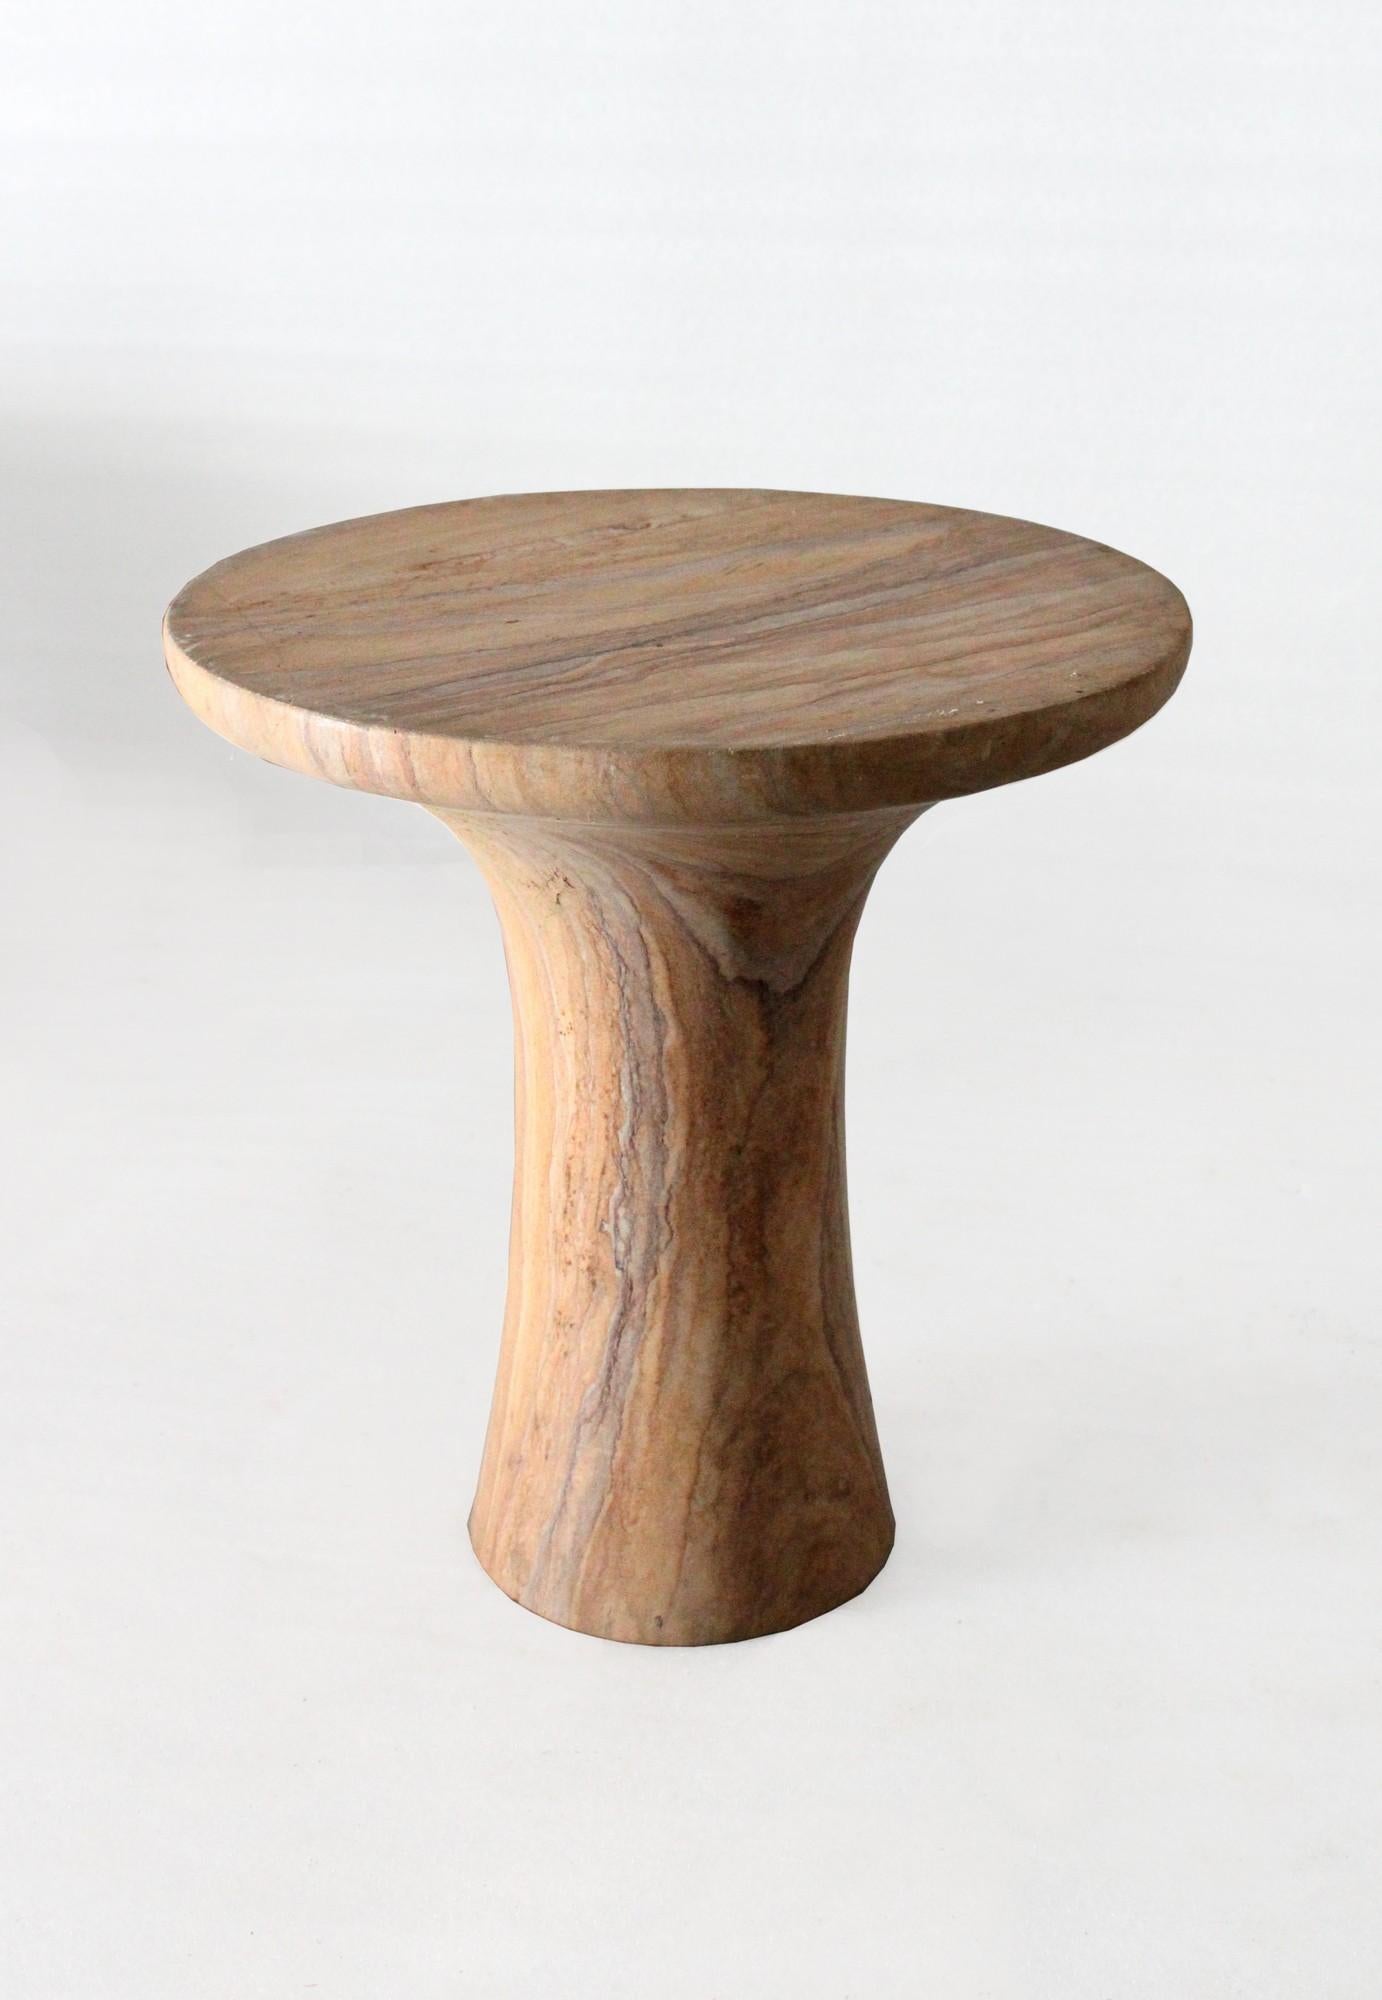 Ein der einfachsten, klarsten und vielseitigsten Designs aus der Kollektion von Stephanie Odegard. Dieser Tisch passt gut zu jeder Umgebung, ob Mid-Century Modern, zeitgenössisch oder minimalistisch, und passt ziemlich überall, wo man ihn